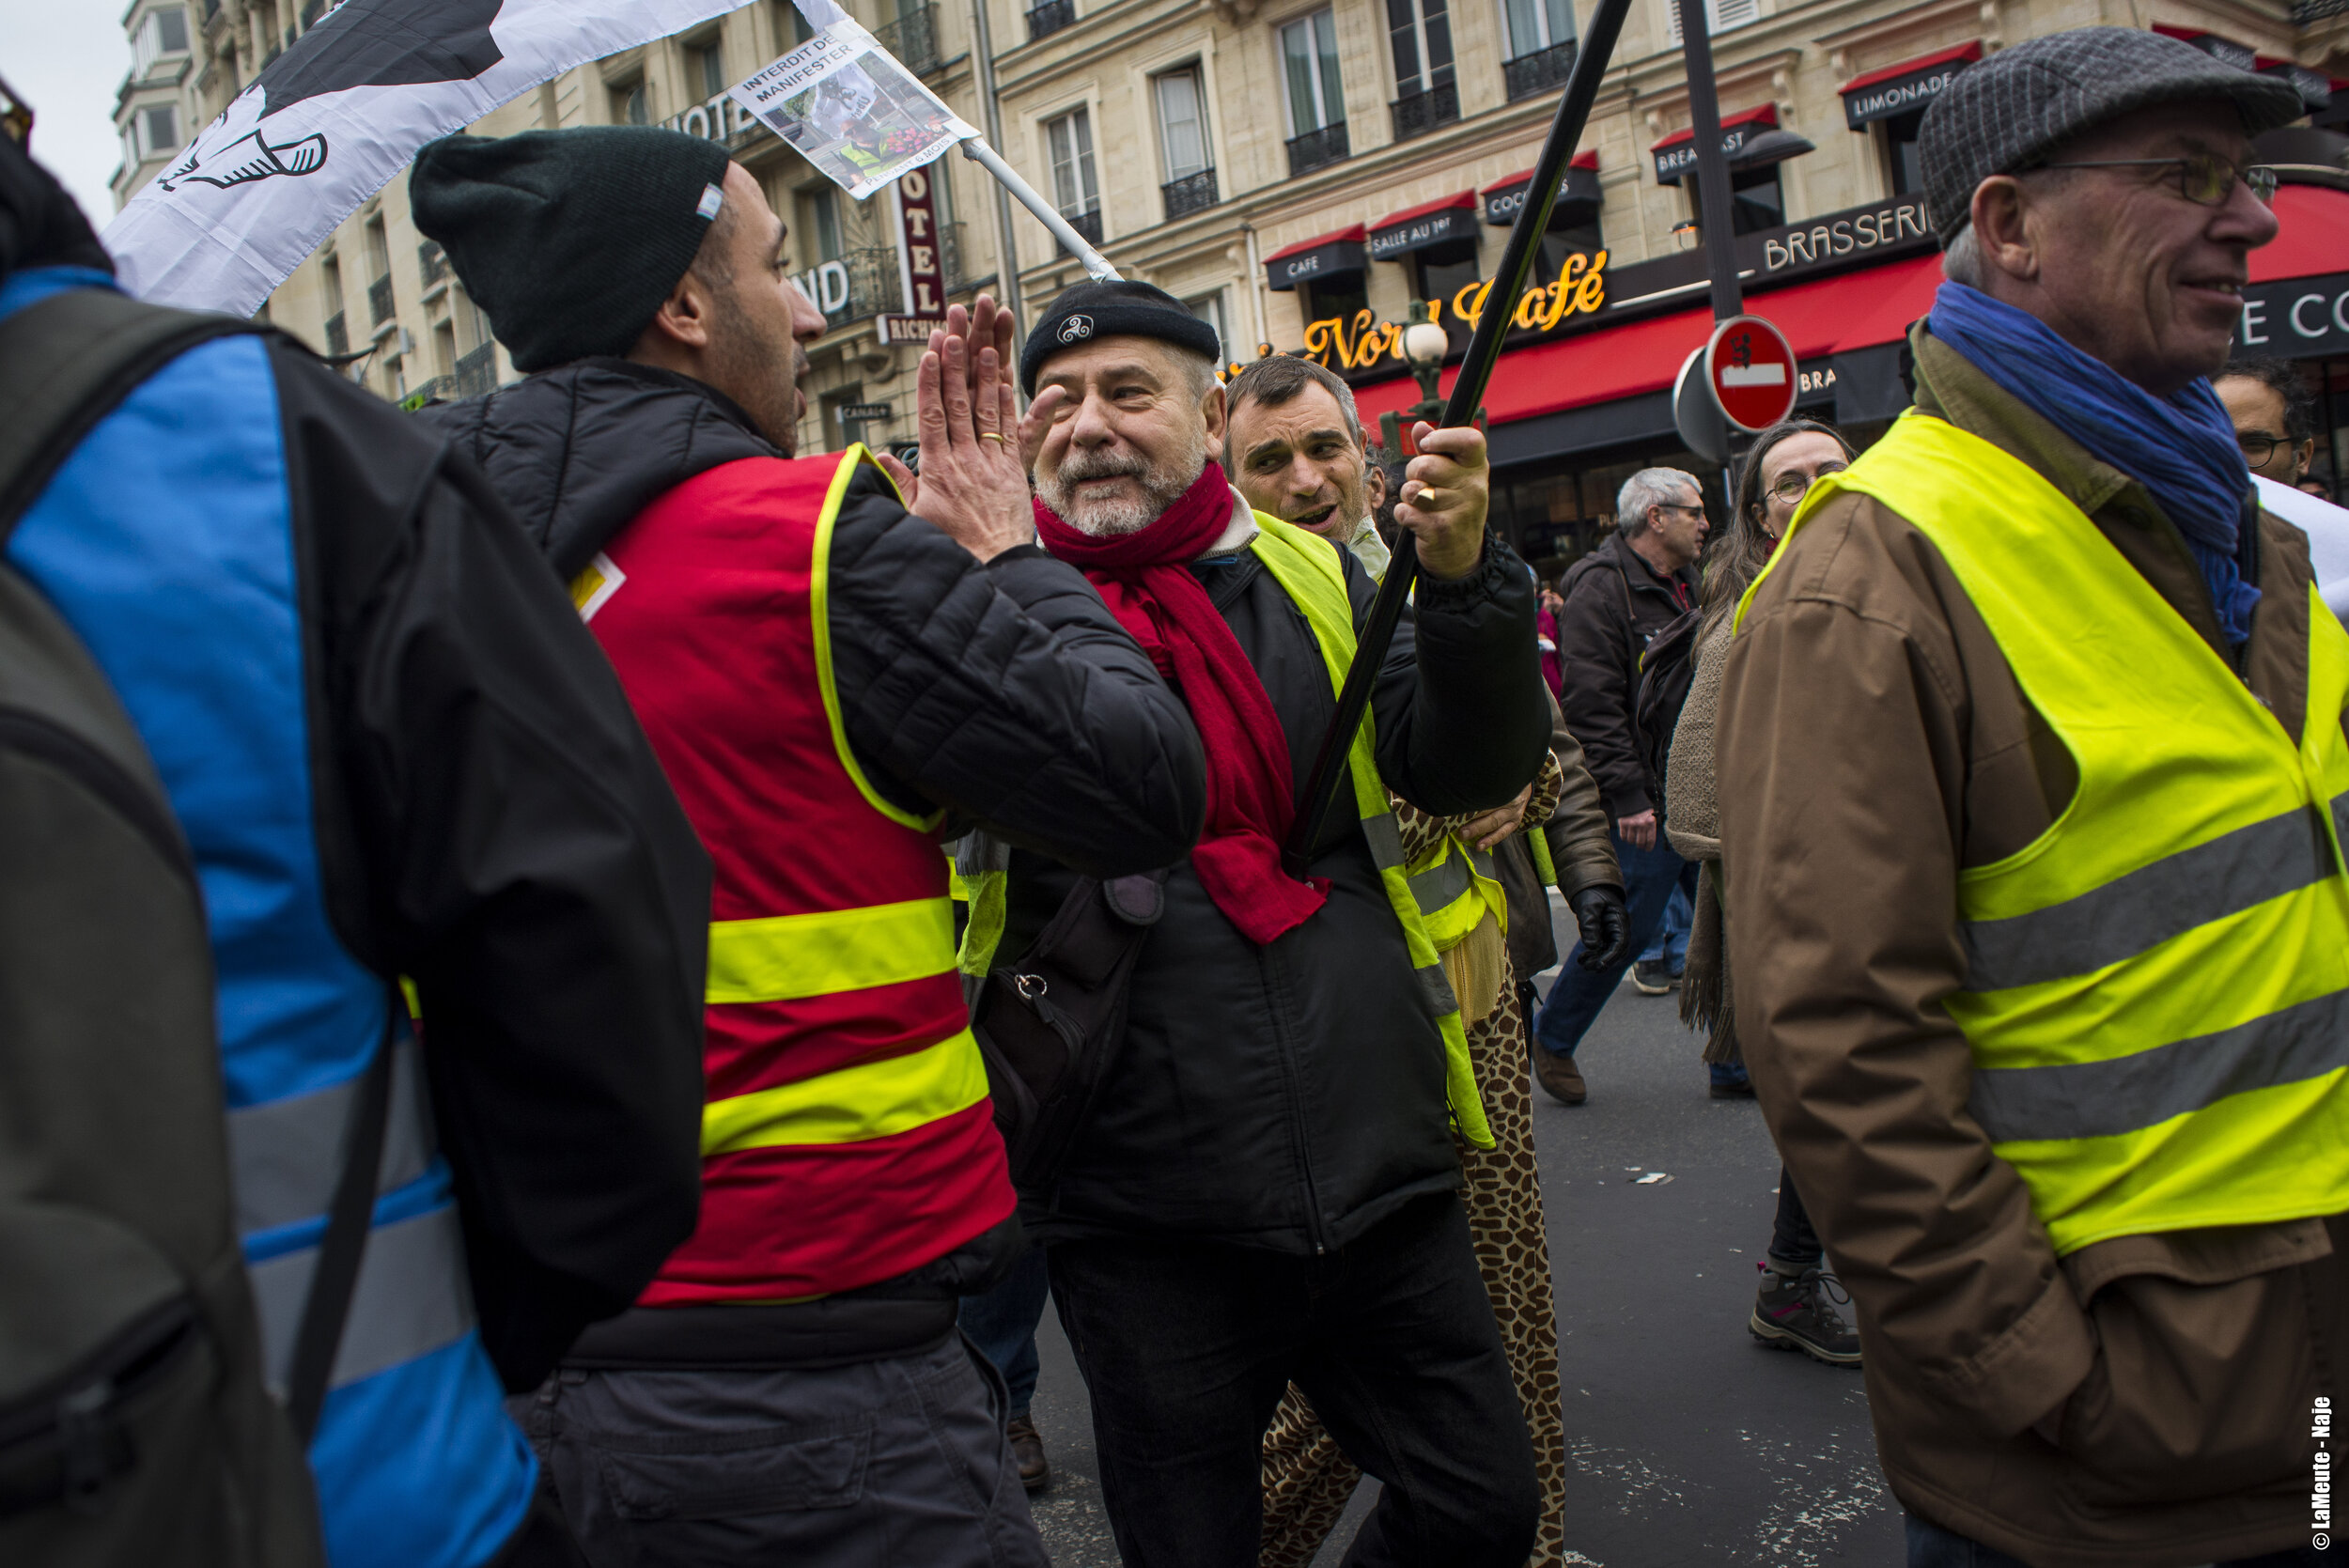   Gilets Jaunes et grévistes se saluent sur le parvis de la Gare du Nord.  ©LaMeute - Naje.      